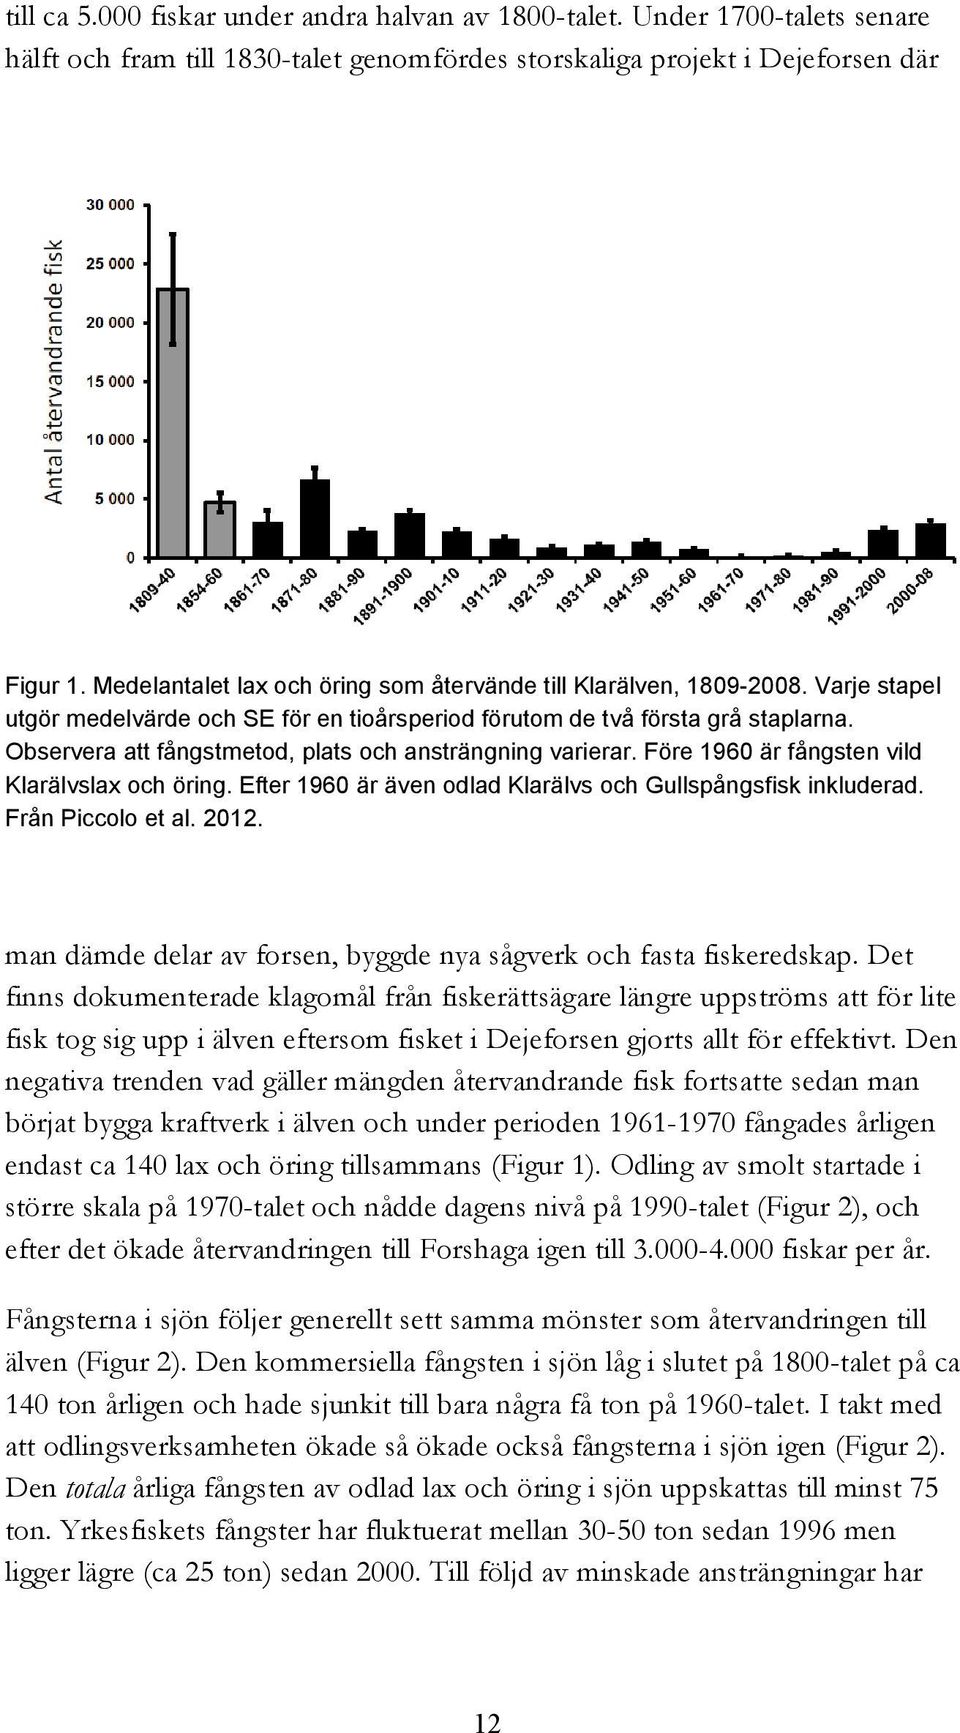 Observera att fångstmetod, plats och ansträngning varierar. Före 1960 är fångsten vild Klarälvslax och öring. Efter 1960 är även odlad Klarälvs och Gullspångsfisk inkluderad. Från Piccolo et al. 2012.